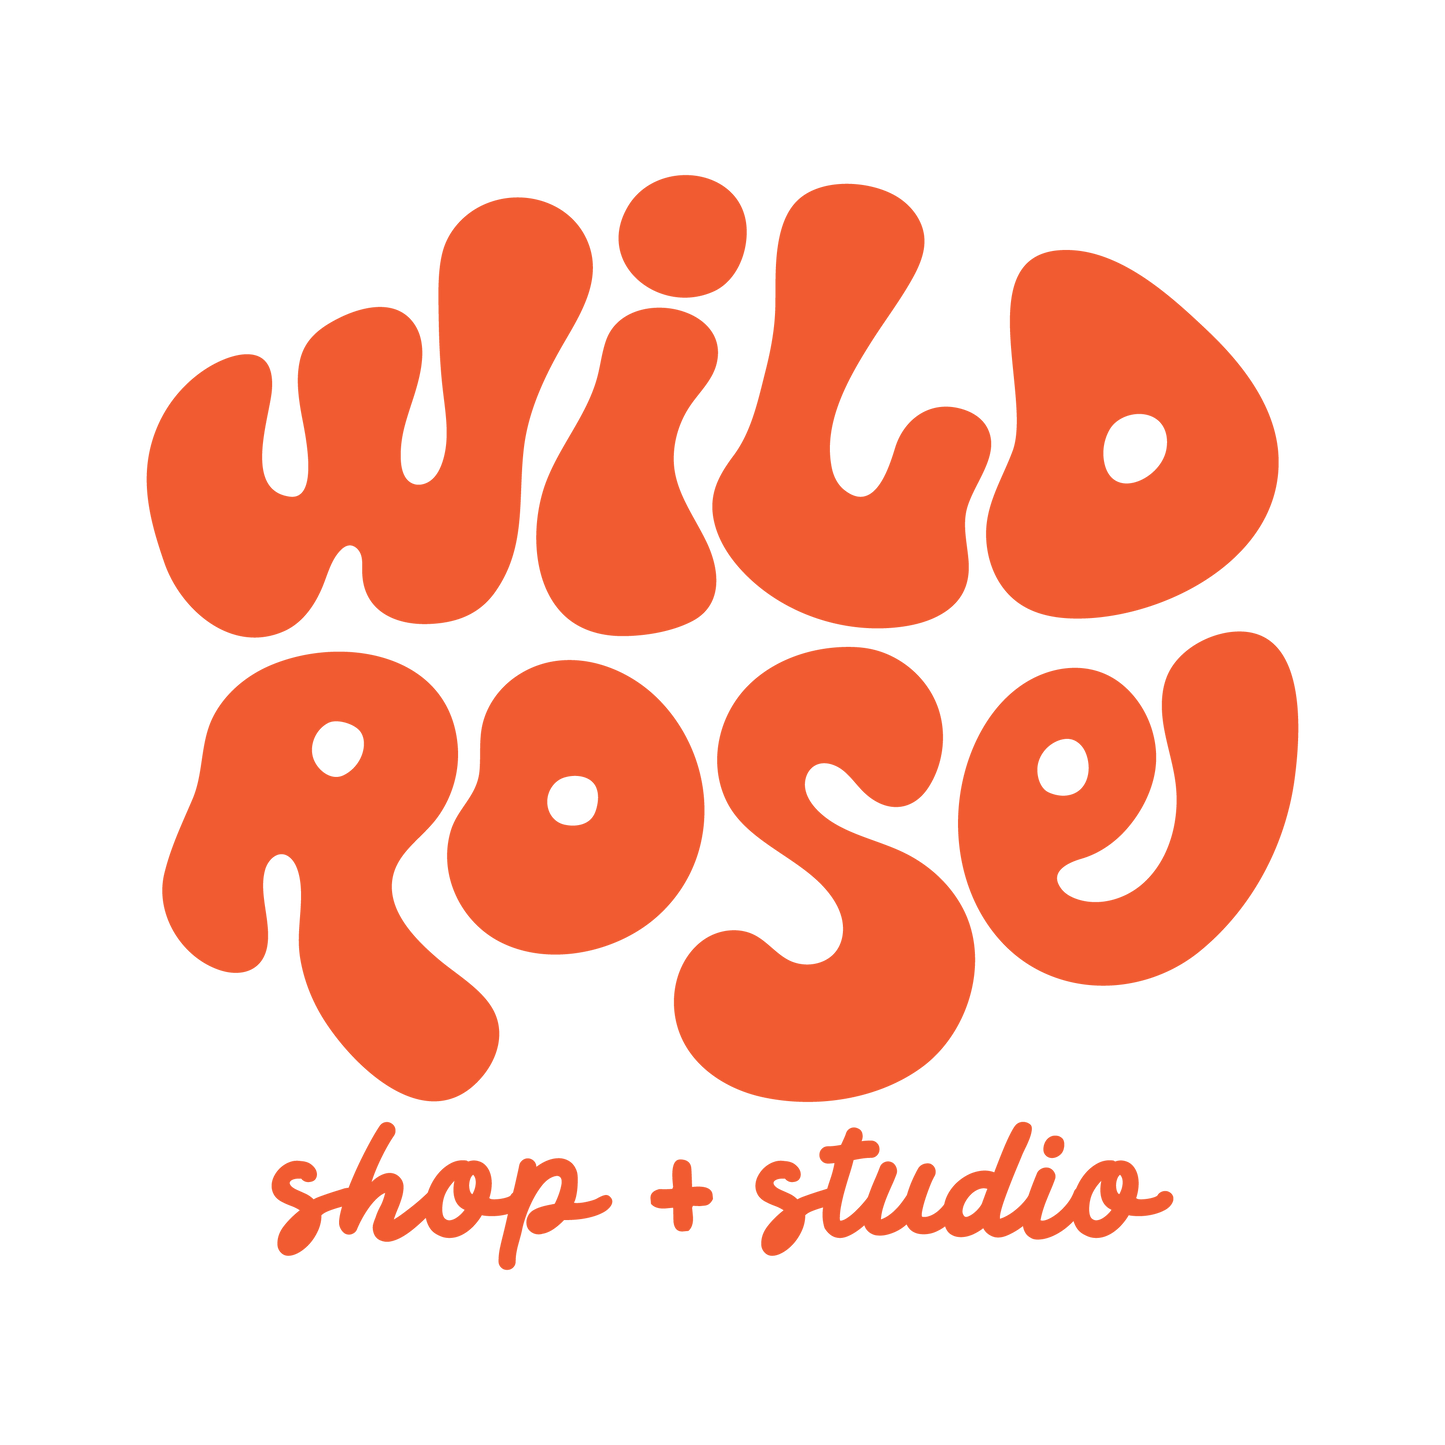 Wild Rose Shop &amp; Studio LLC